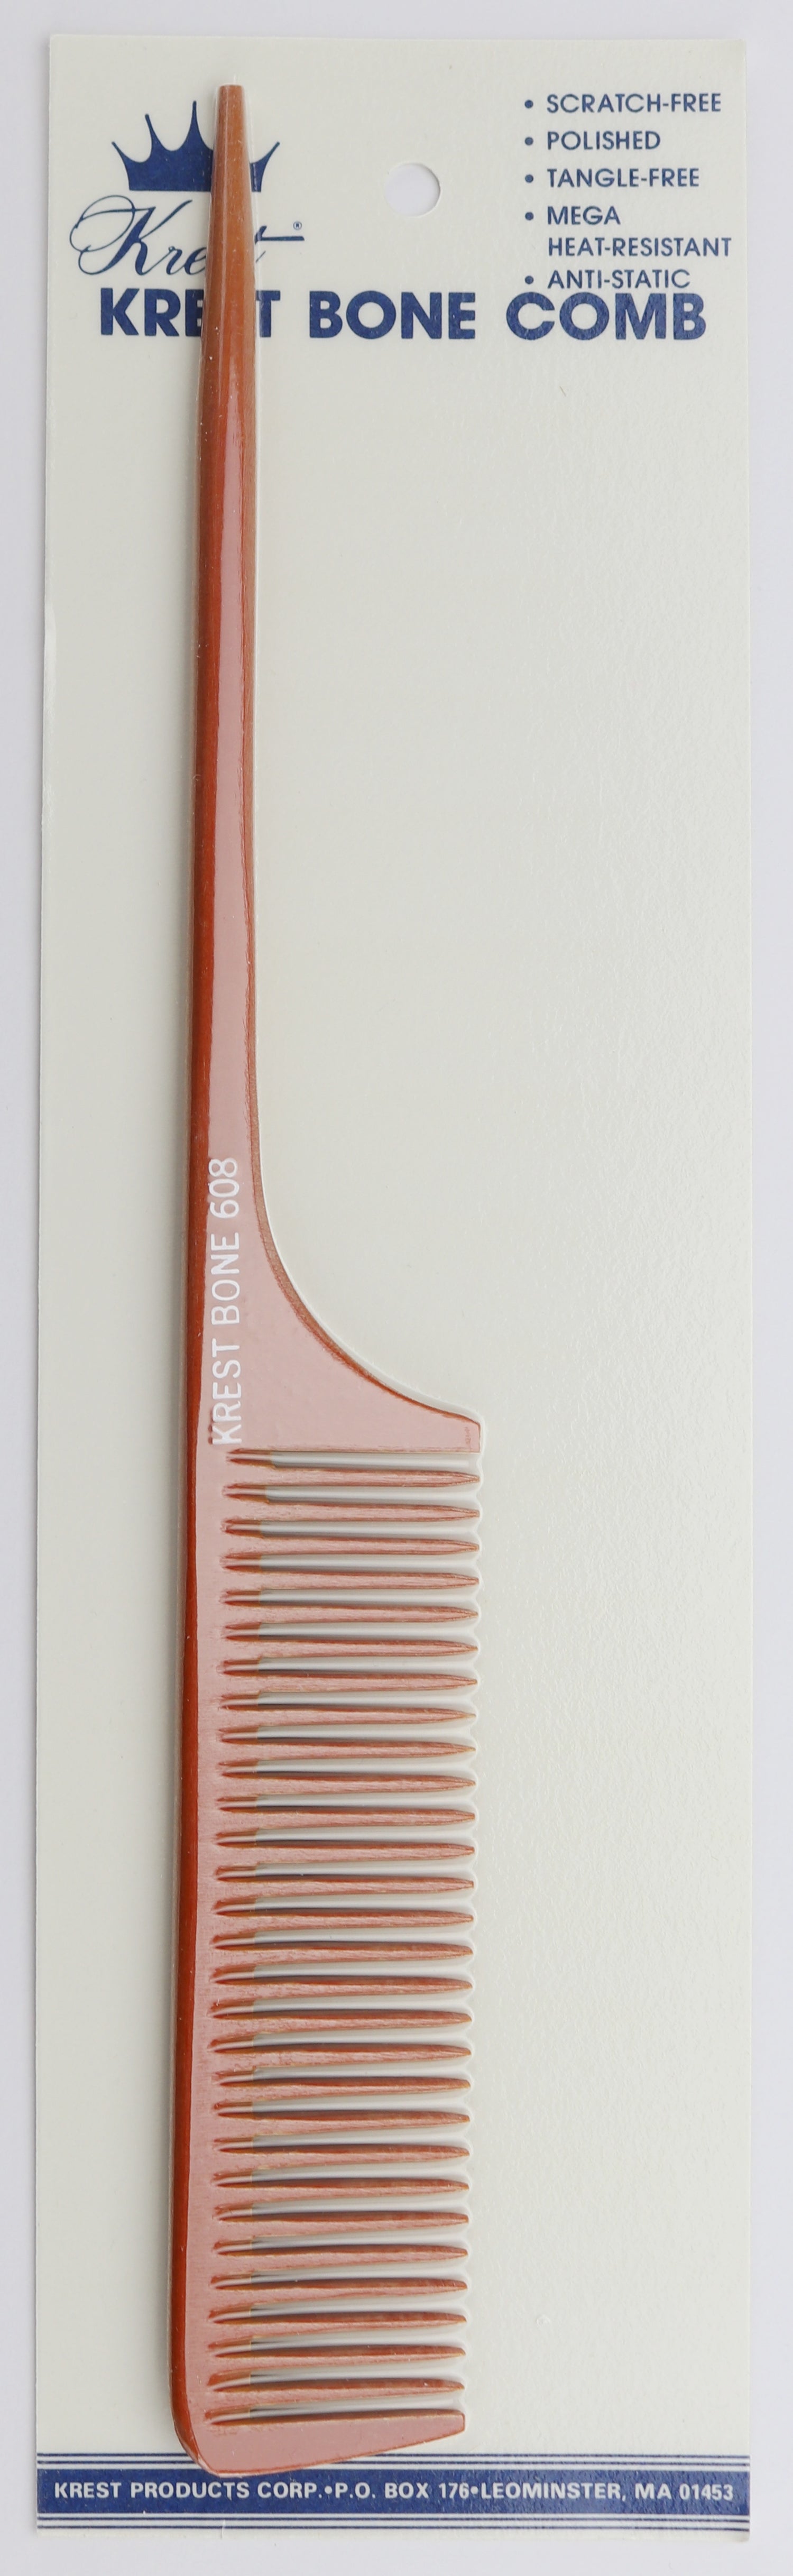 barber comb hair cutting comb hair comb  barber clippers  krest combs  rat tail comb  bone comb